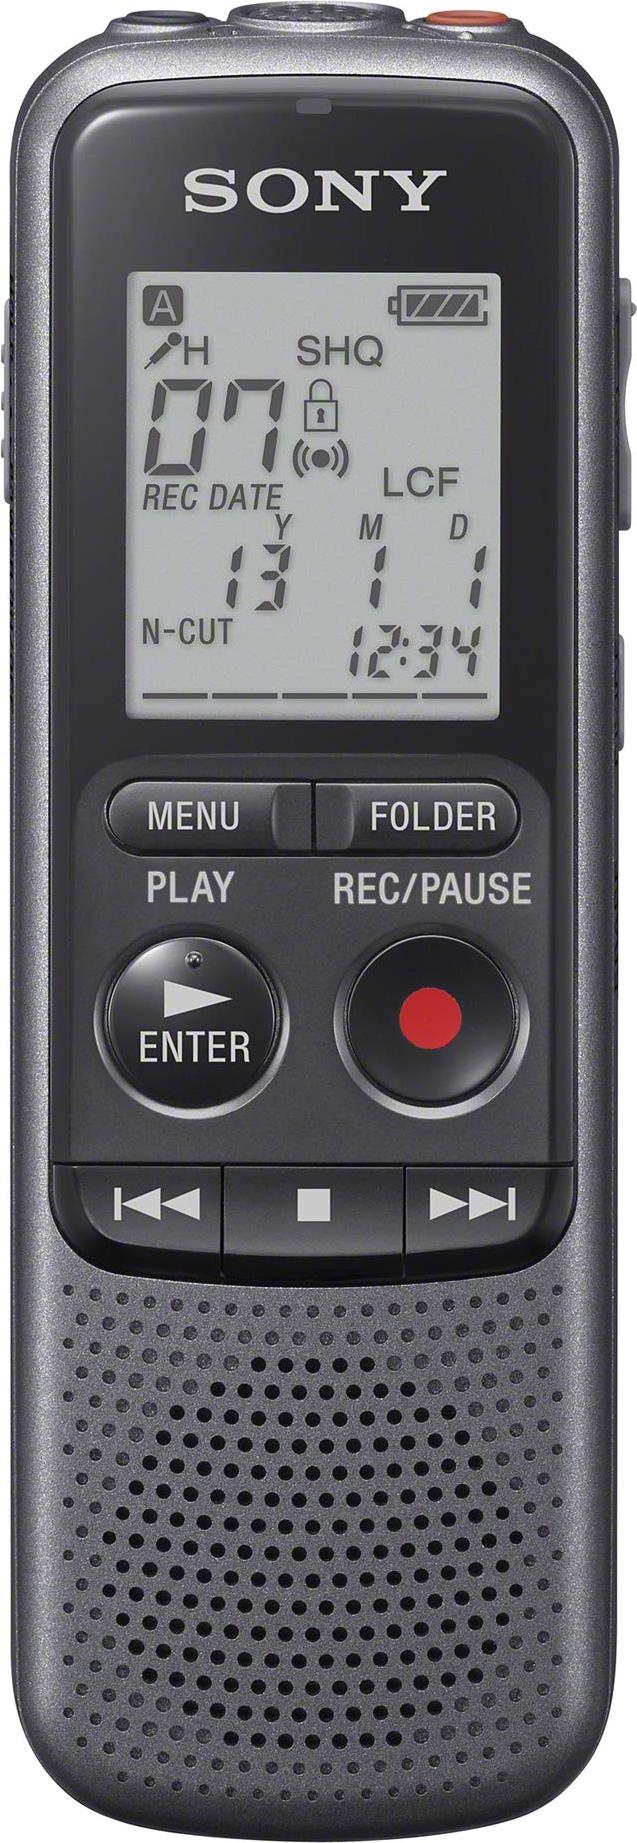 Sony ICD-PX240 (4 GB), Diktiergerät, Schwarz